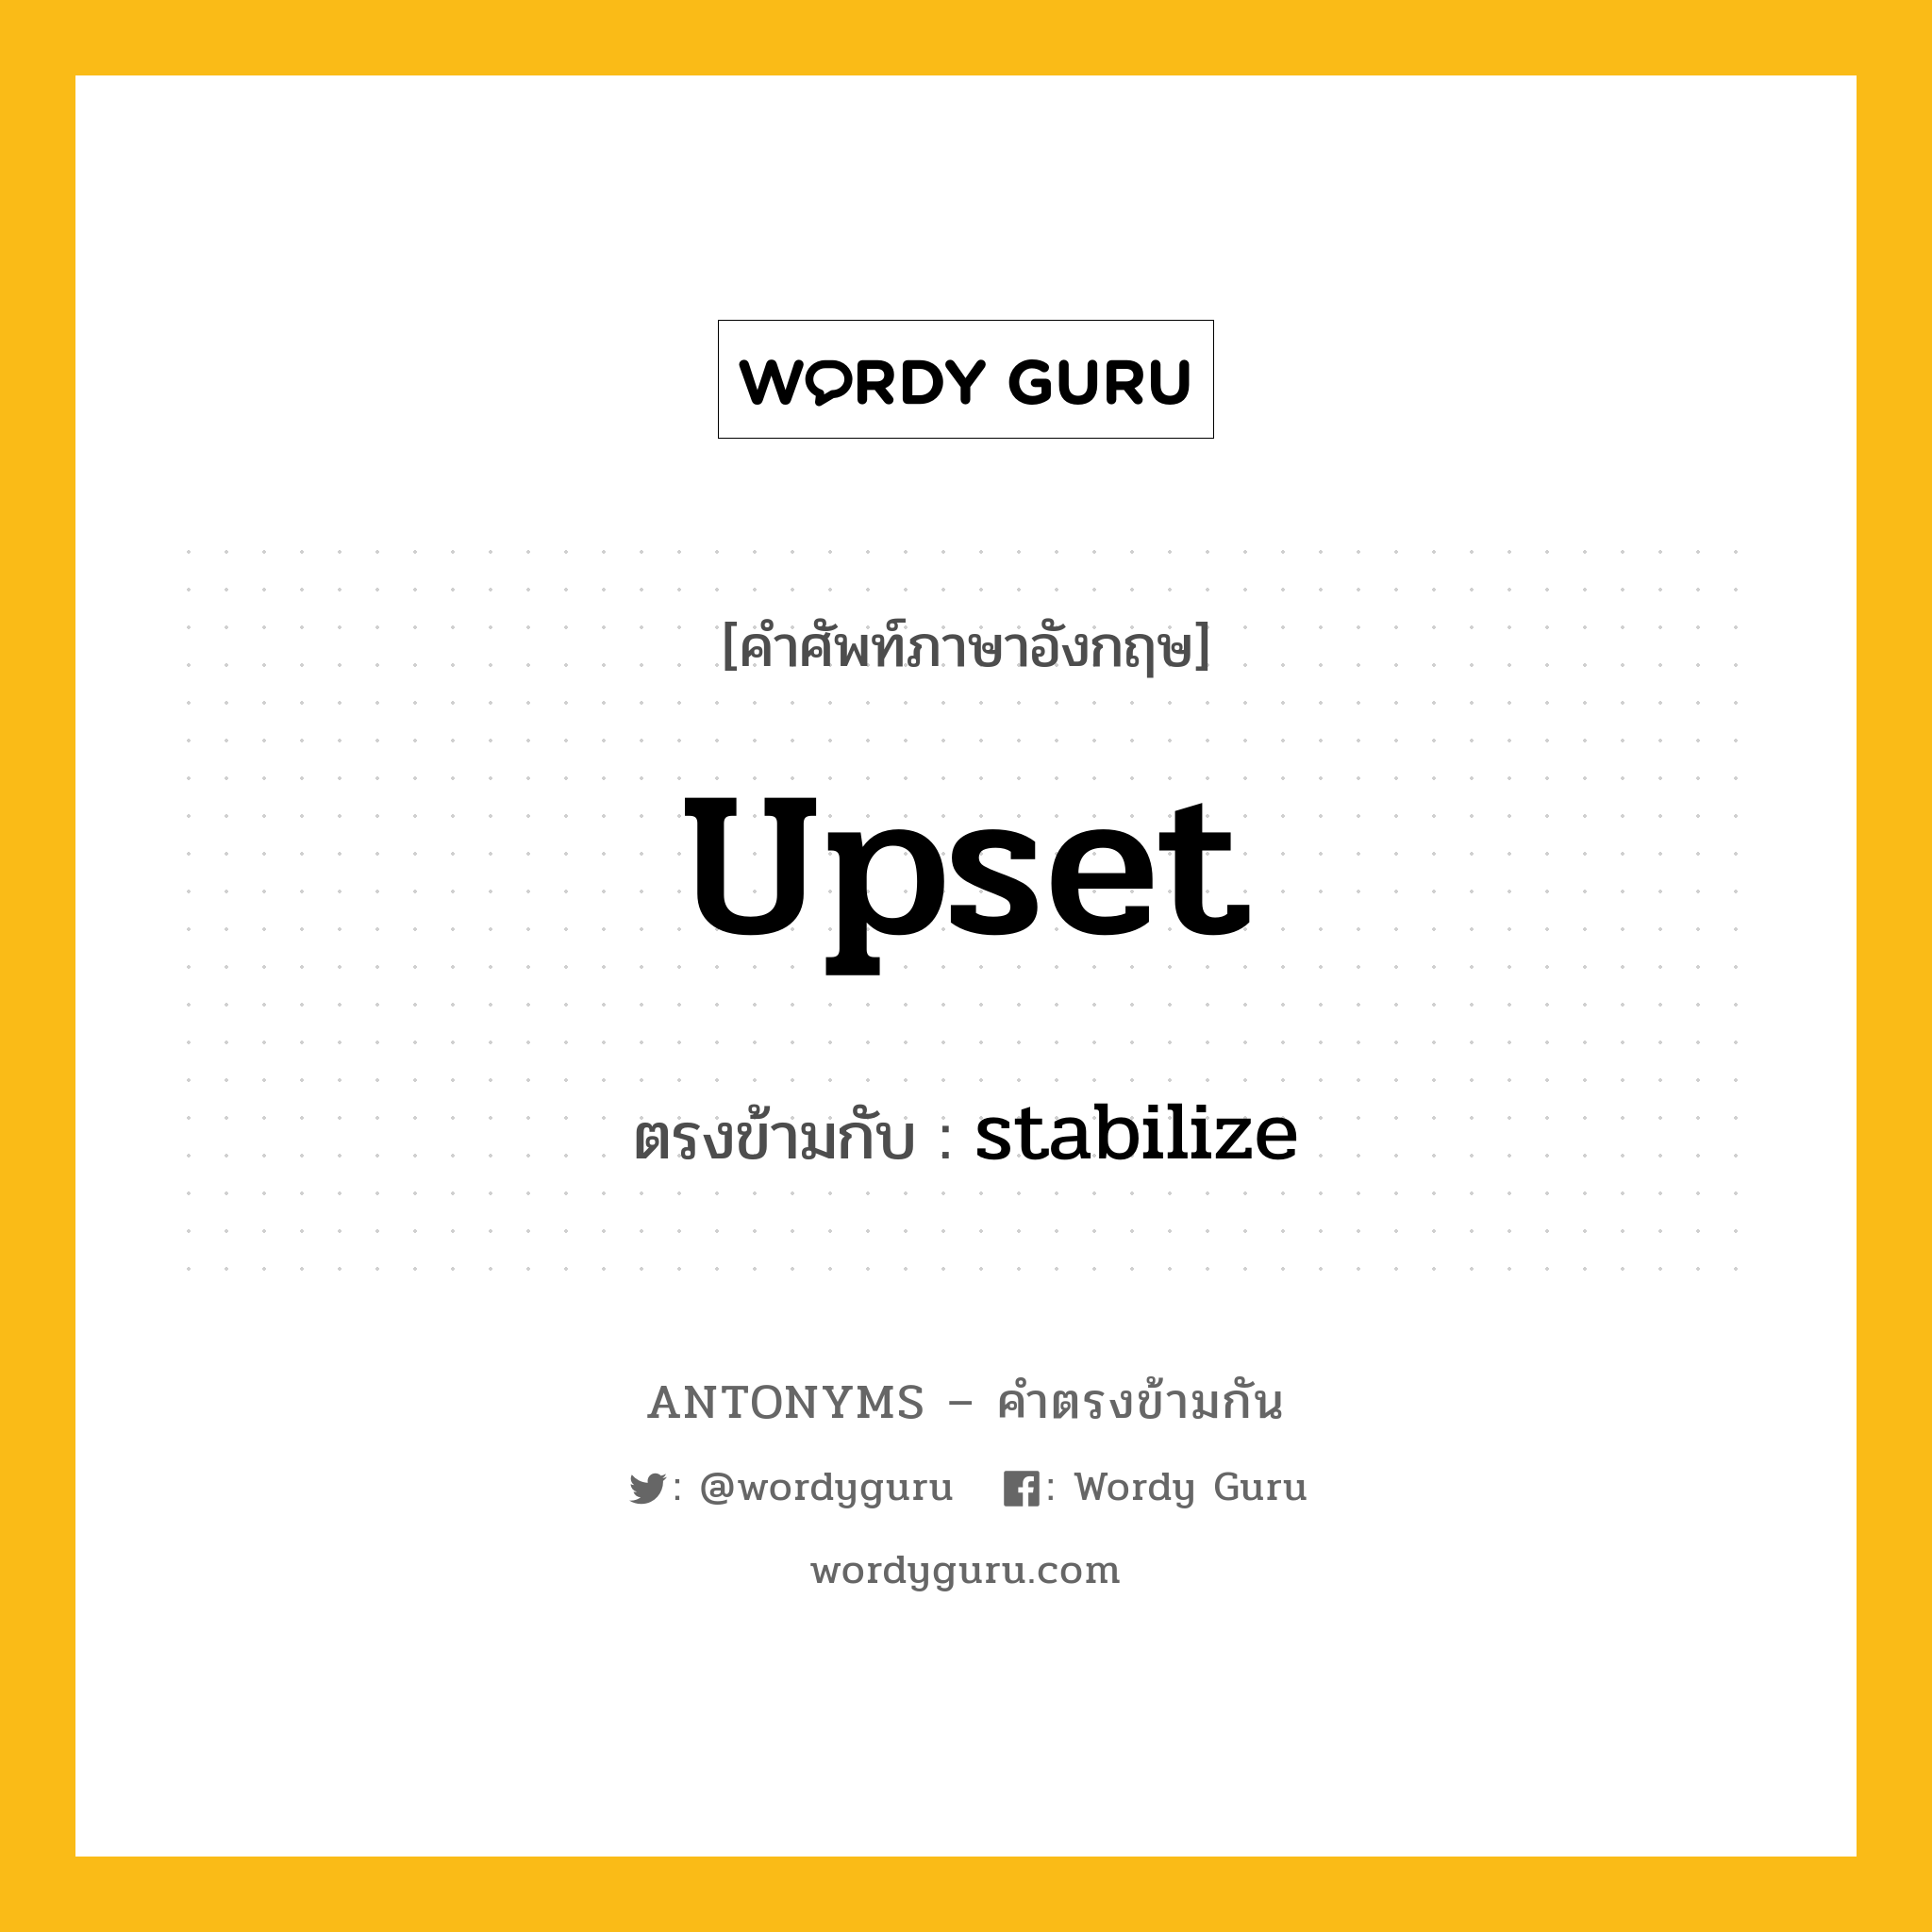 upset เป็นคำตรงข้ามกับคำไหนบ้าง?, คำศัพท์ภาษาอังกฤษ upset ตรงข้ามกับ stabilize หมวด stabilize